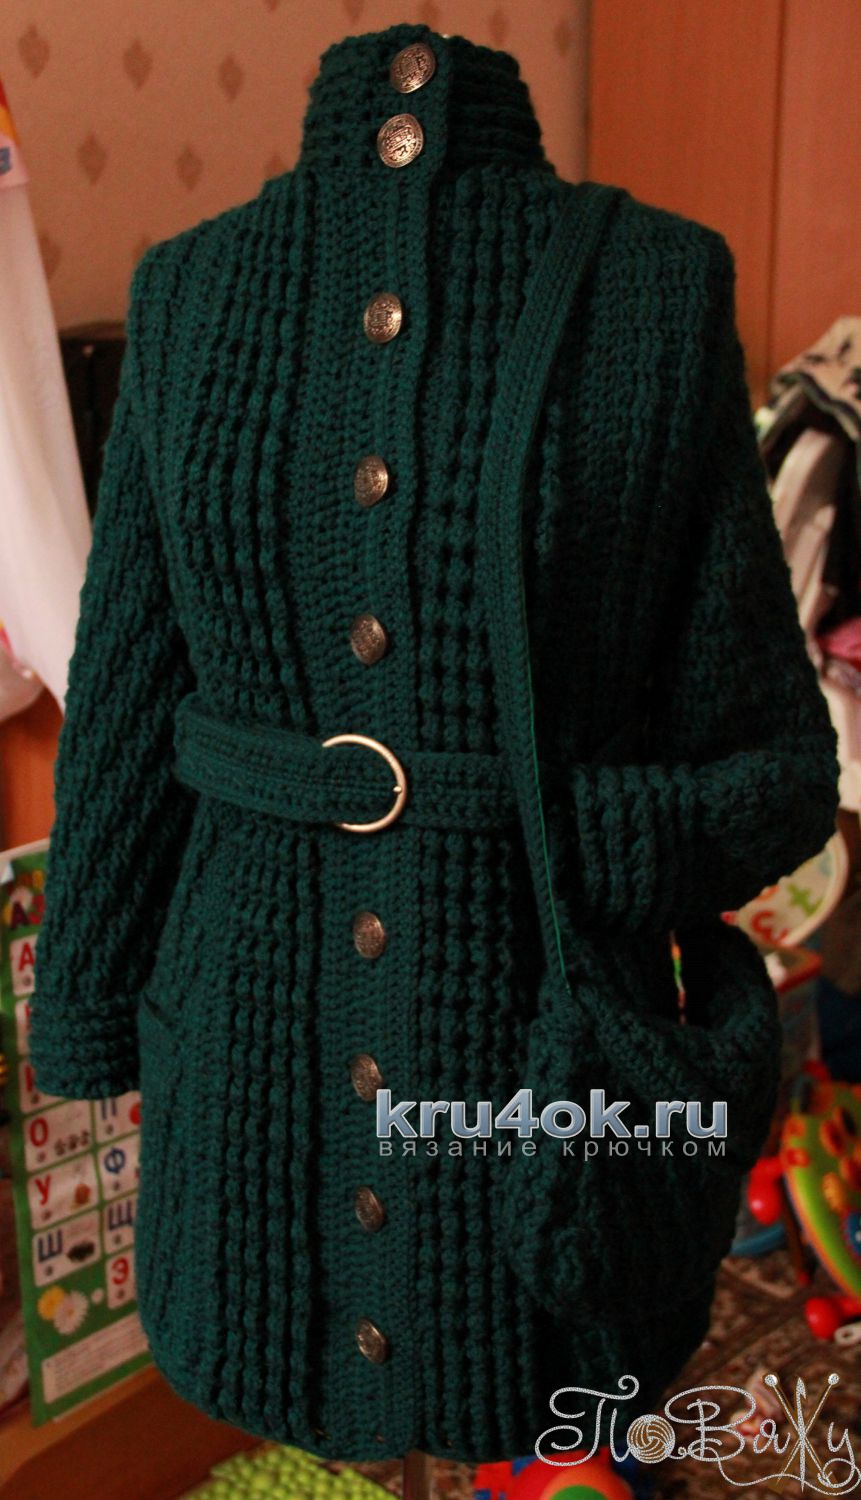 Вязанные крючком пальто для женщин и девочек, подборка со схемами вязания